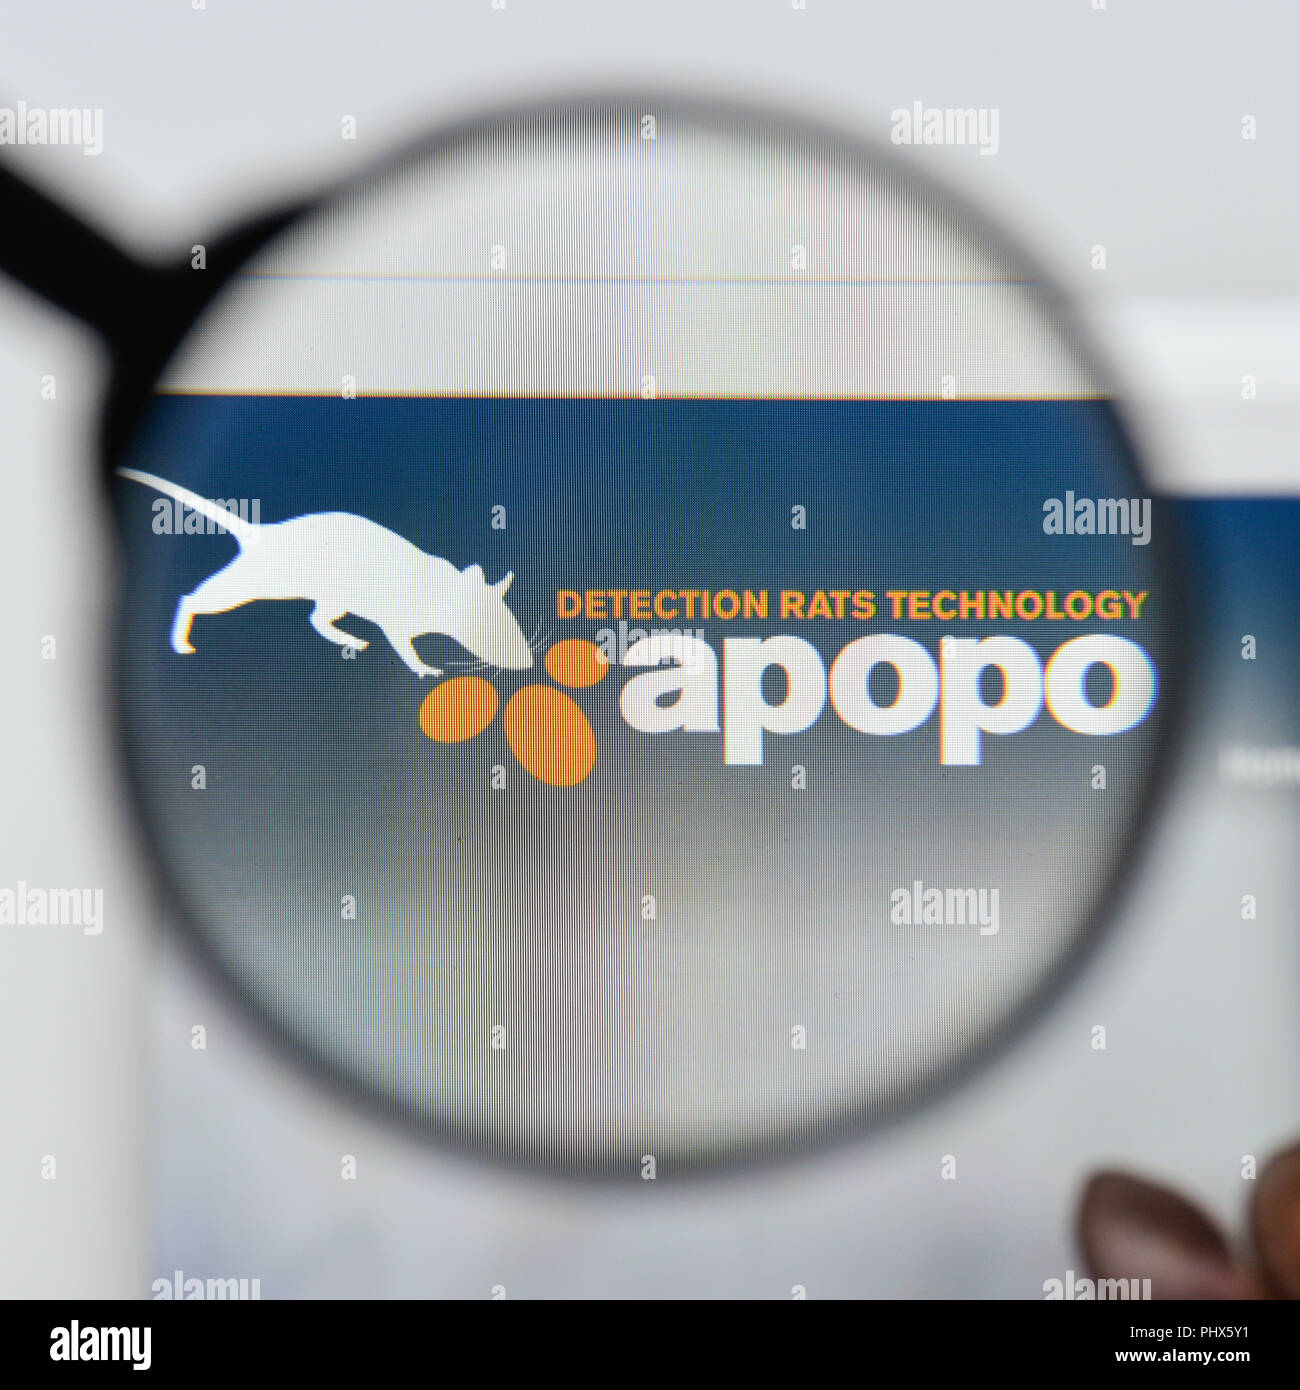 Milan, Italy - August 20, 2018: Apopo website homepage. Apopo logo visible. Stock Photo